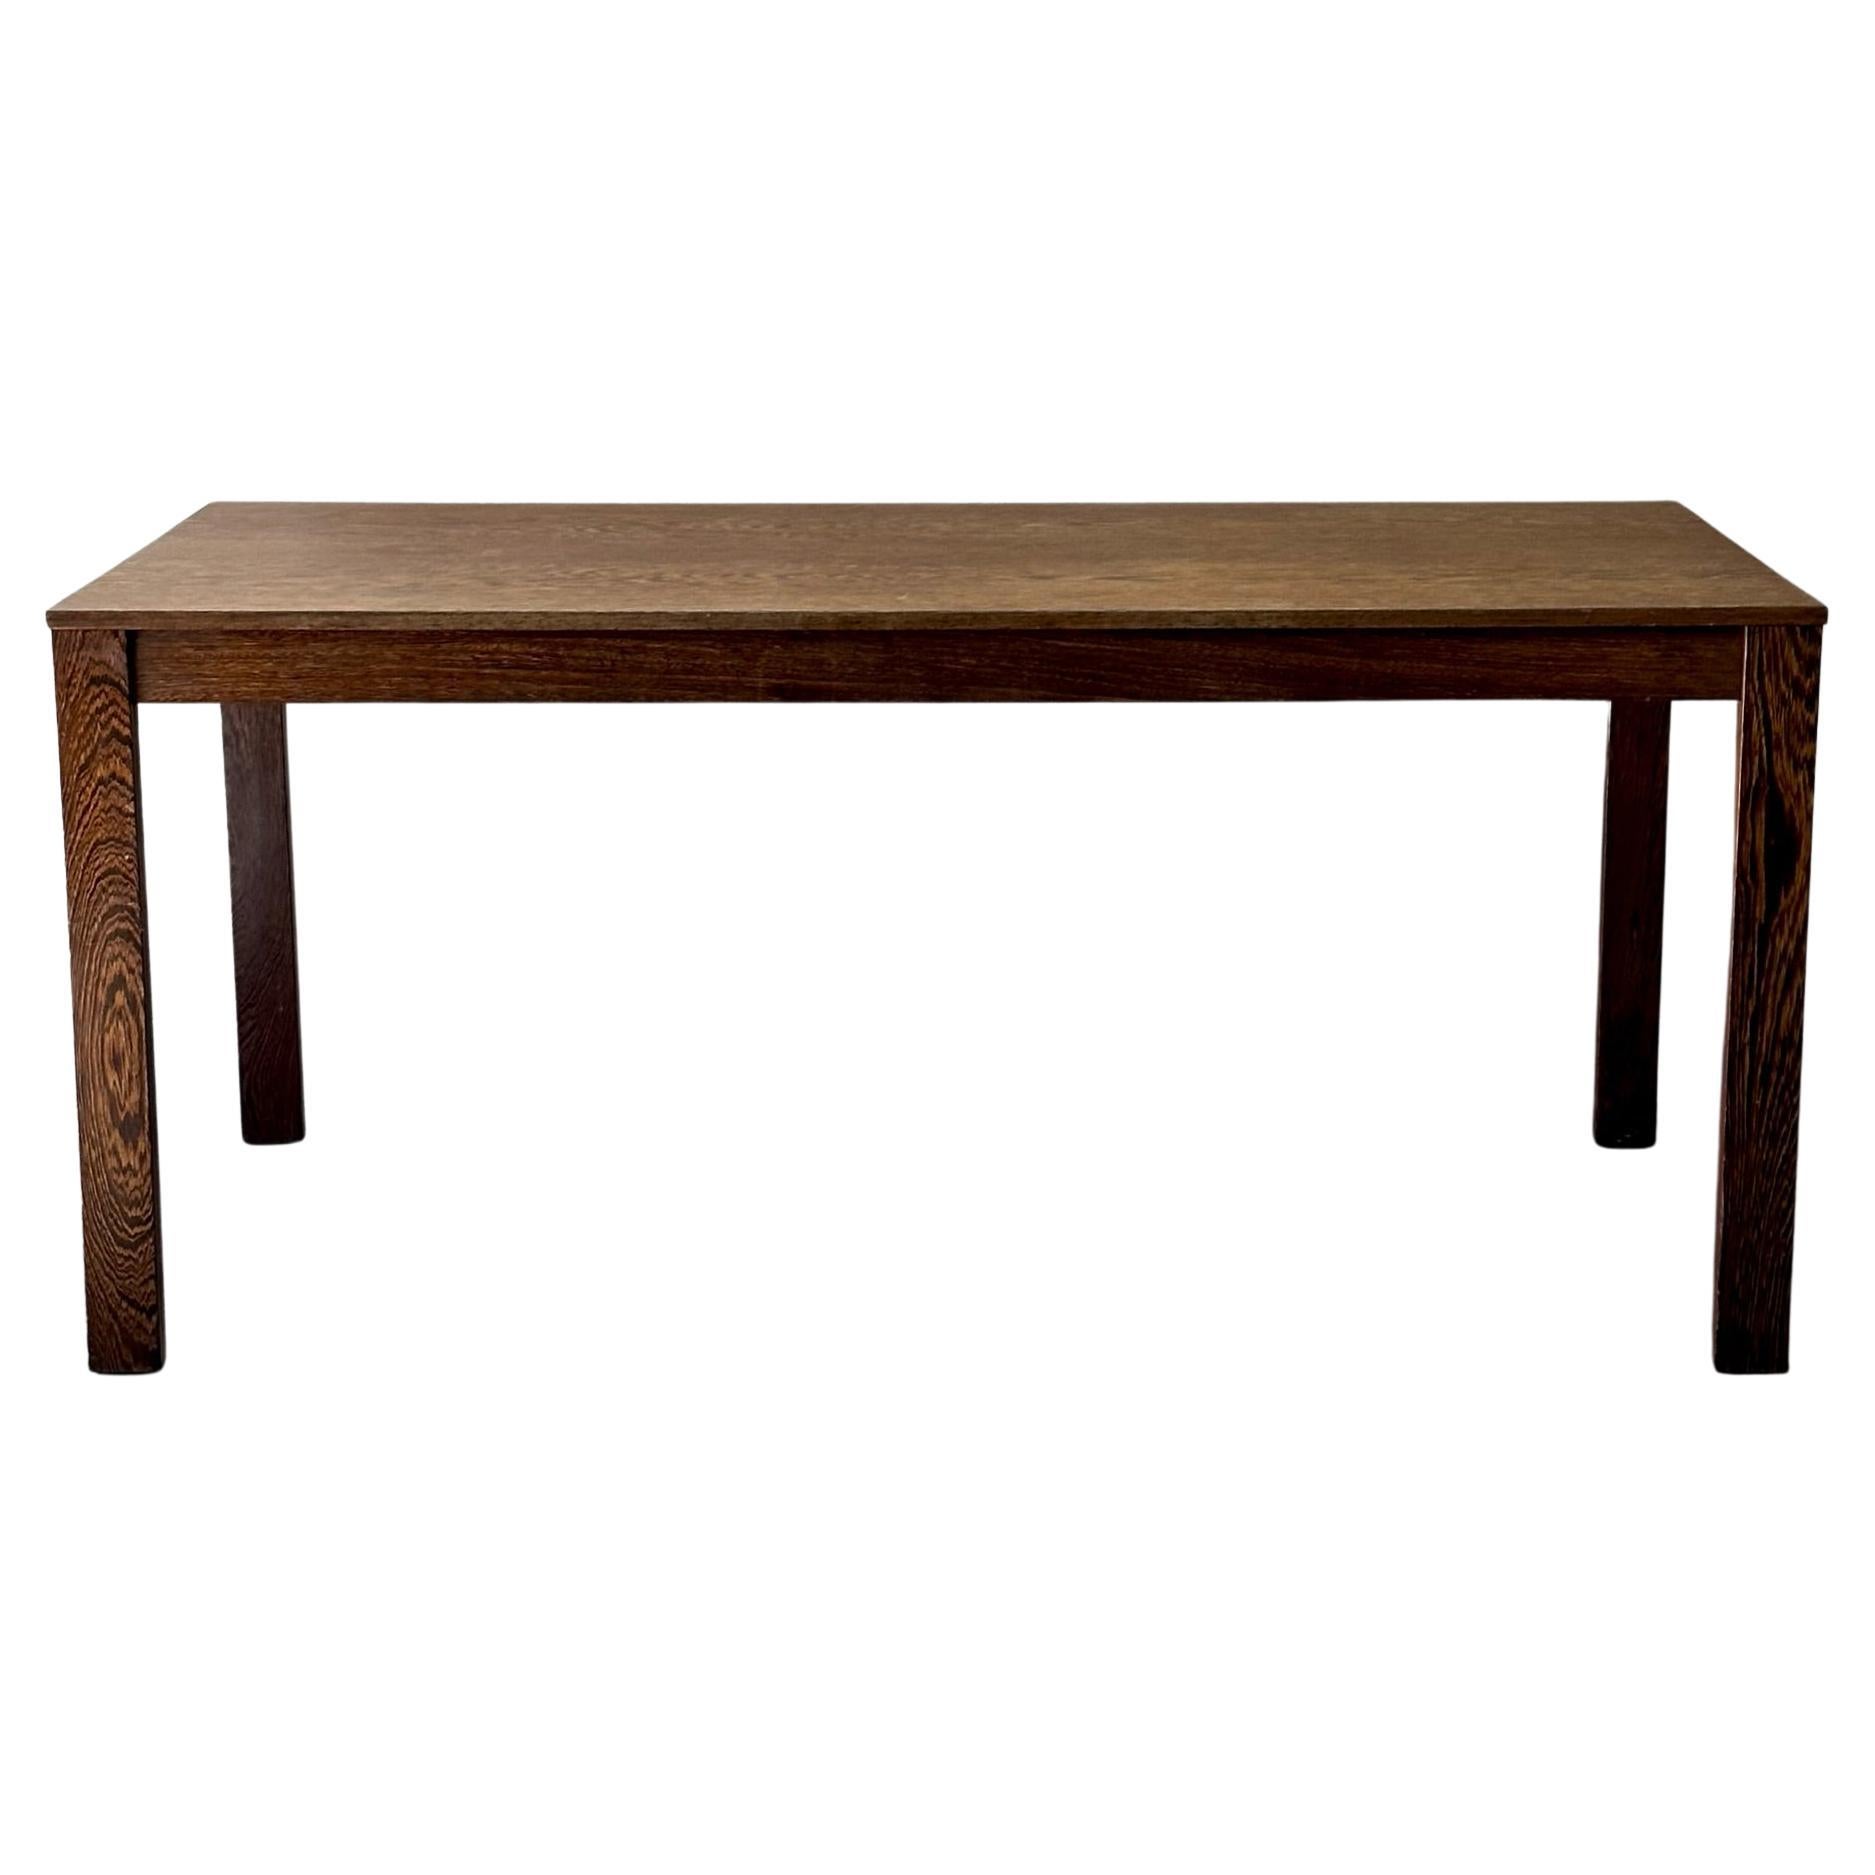 Minimalist 1970s Wenge Wood Table or Desk